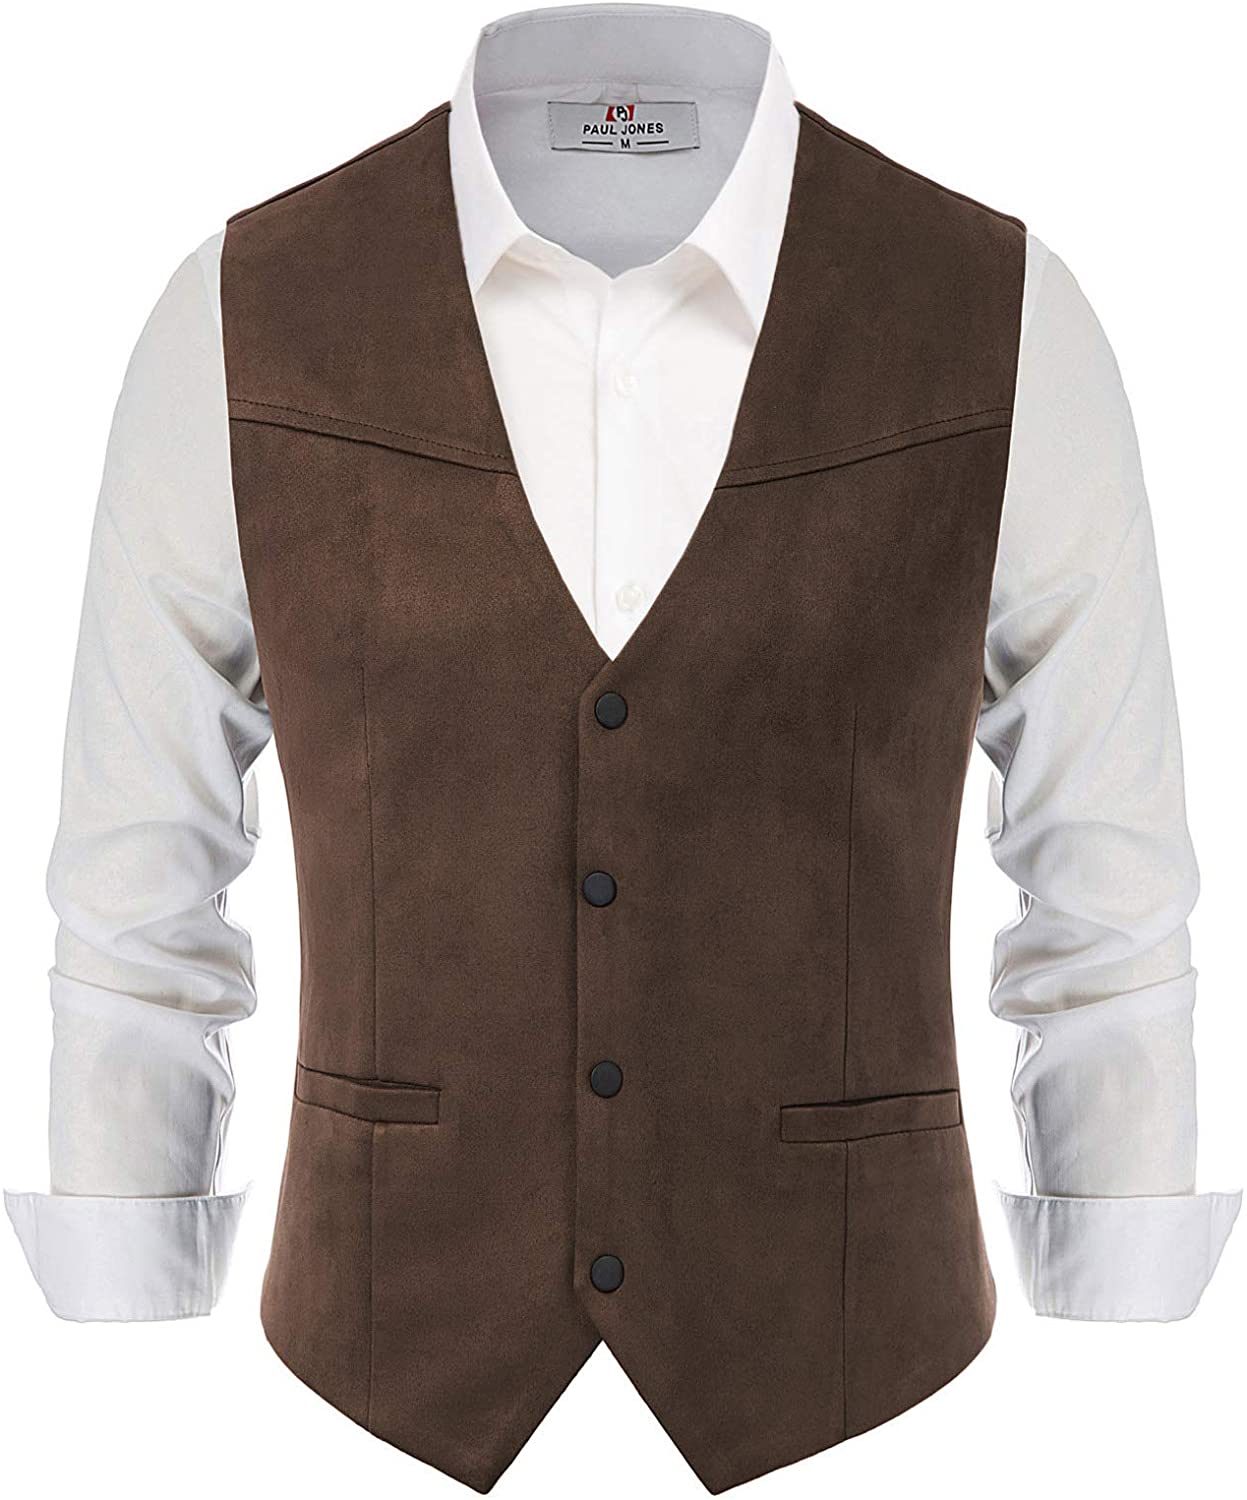 Paul Jones Mens Suede Leather Suit Vest Casual Western Cowboy Waistcoat Vest 